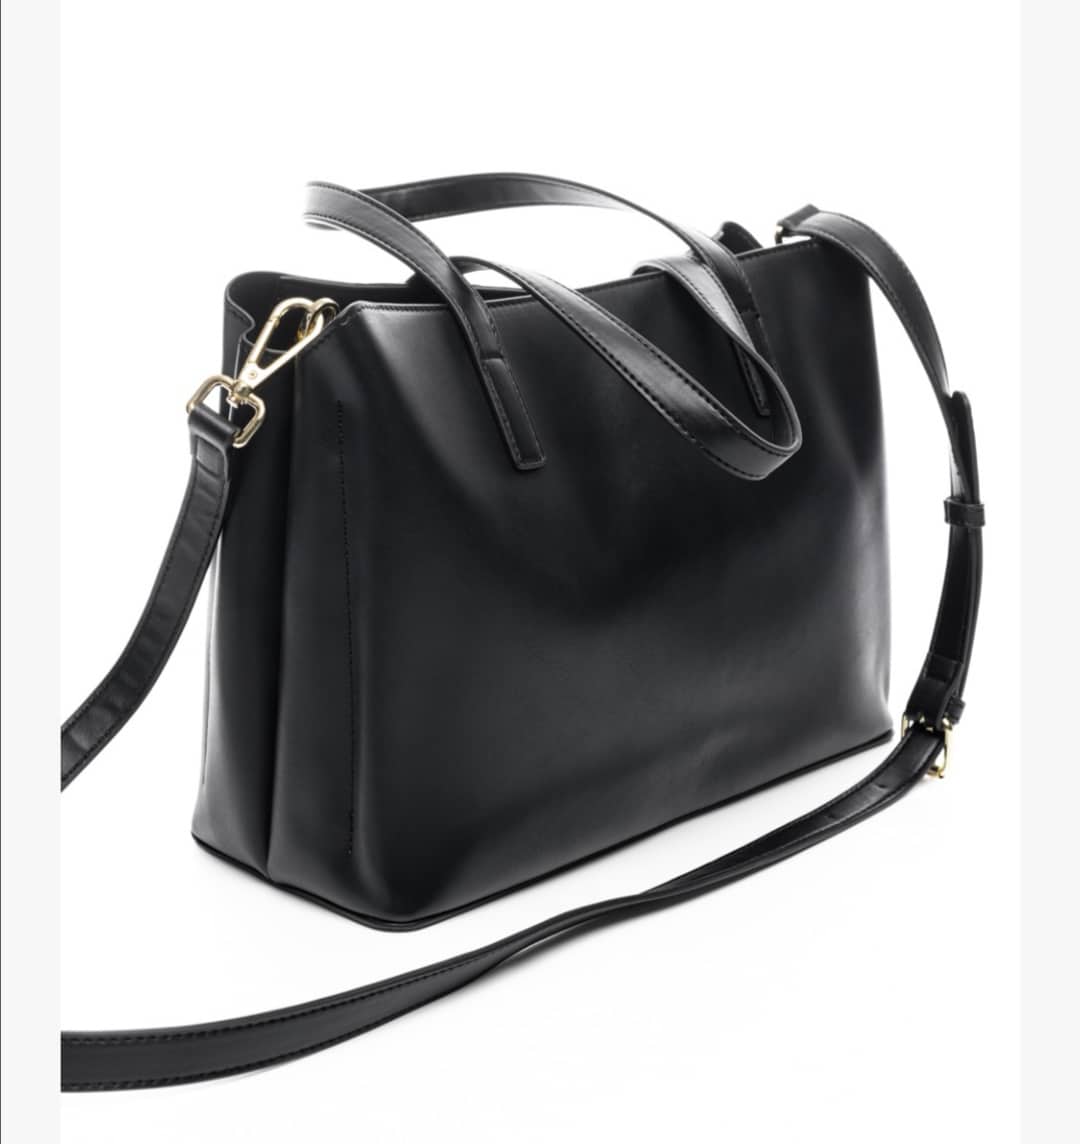 Τσάντα χειρός animal print μοτίβο σε συνδυασμό με μαύρο και μπεζ veta bags accesories